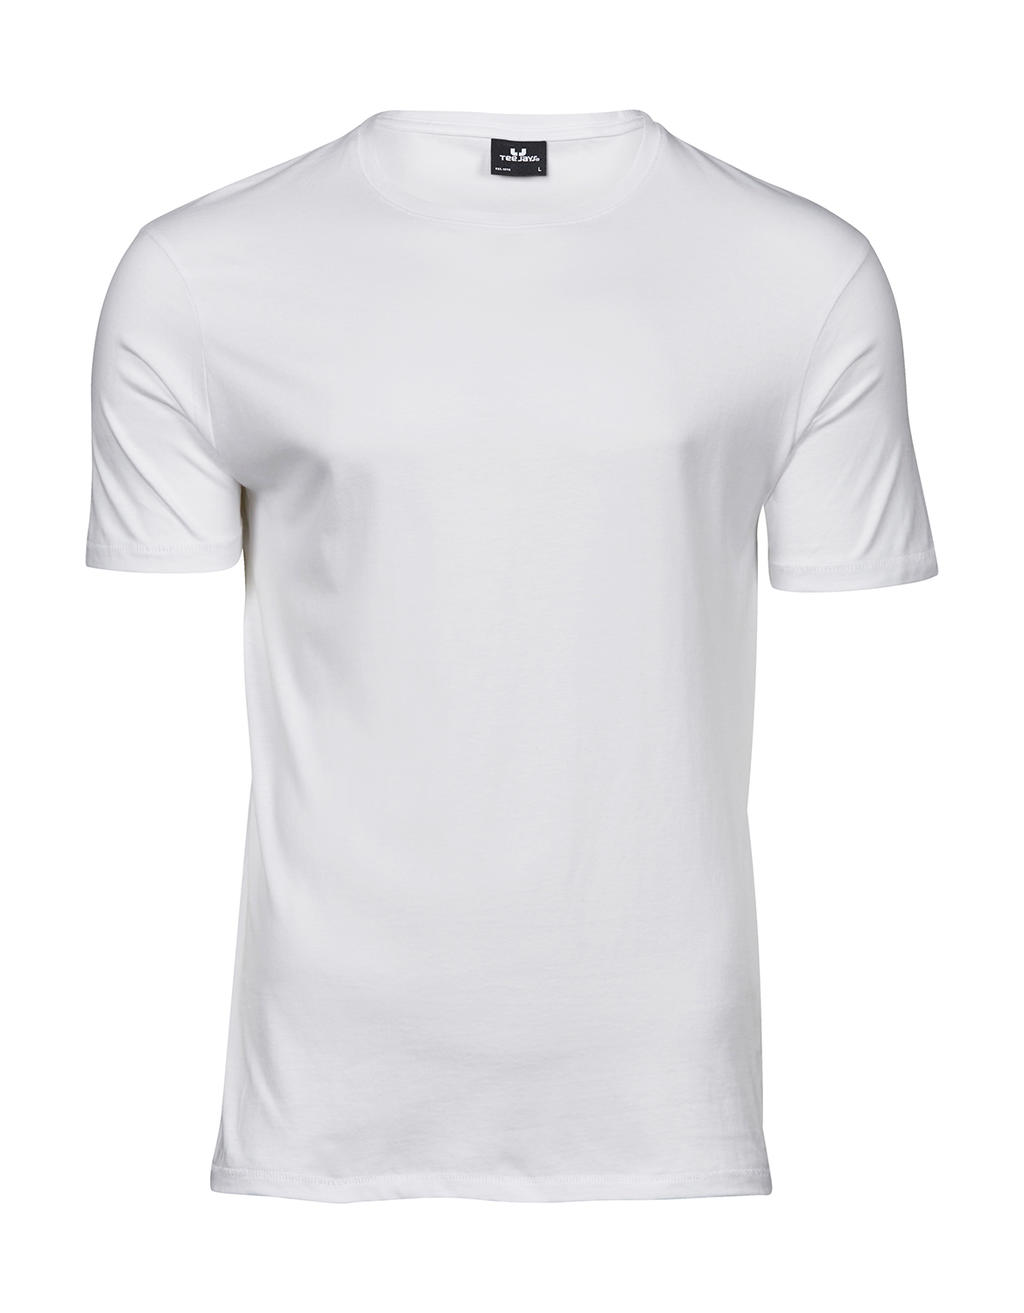 Tee jays - camiseta luxury hombre - 5000